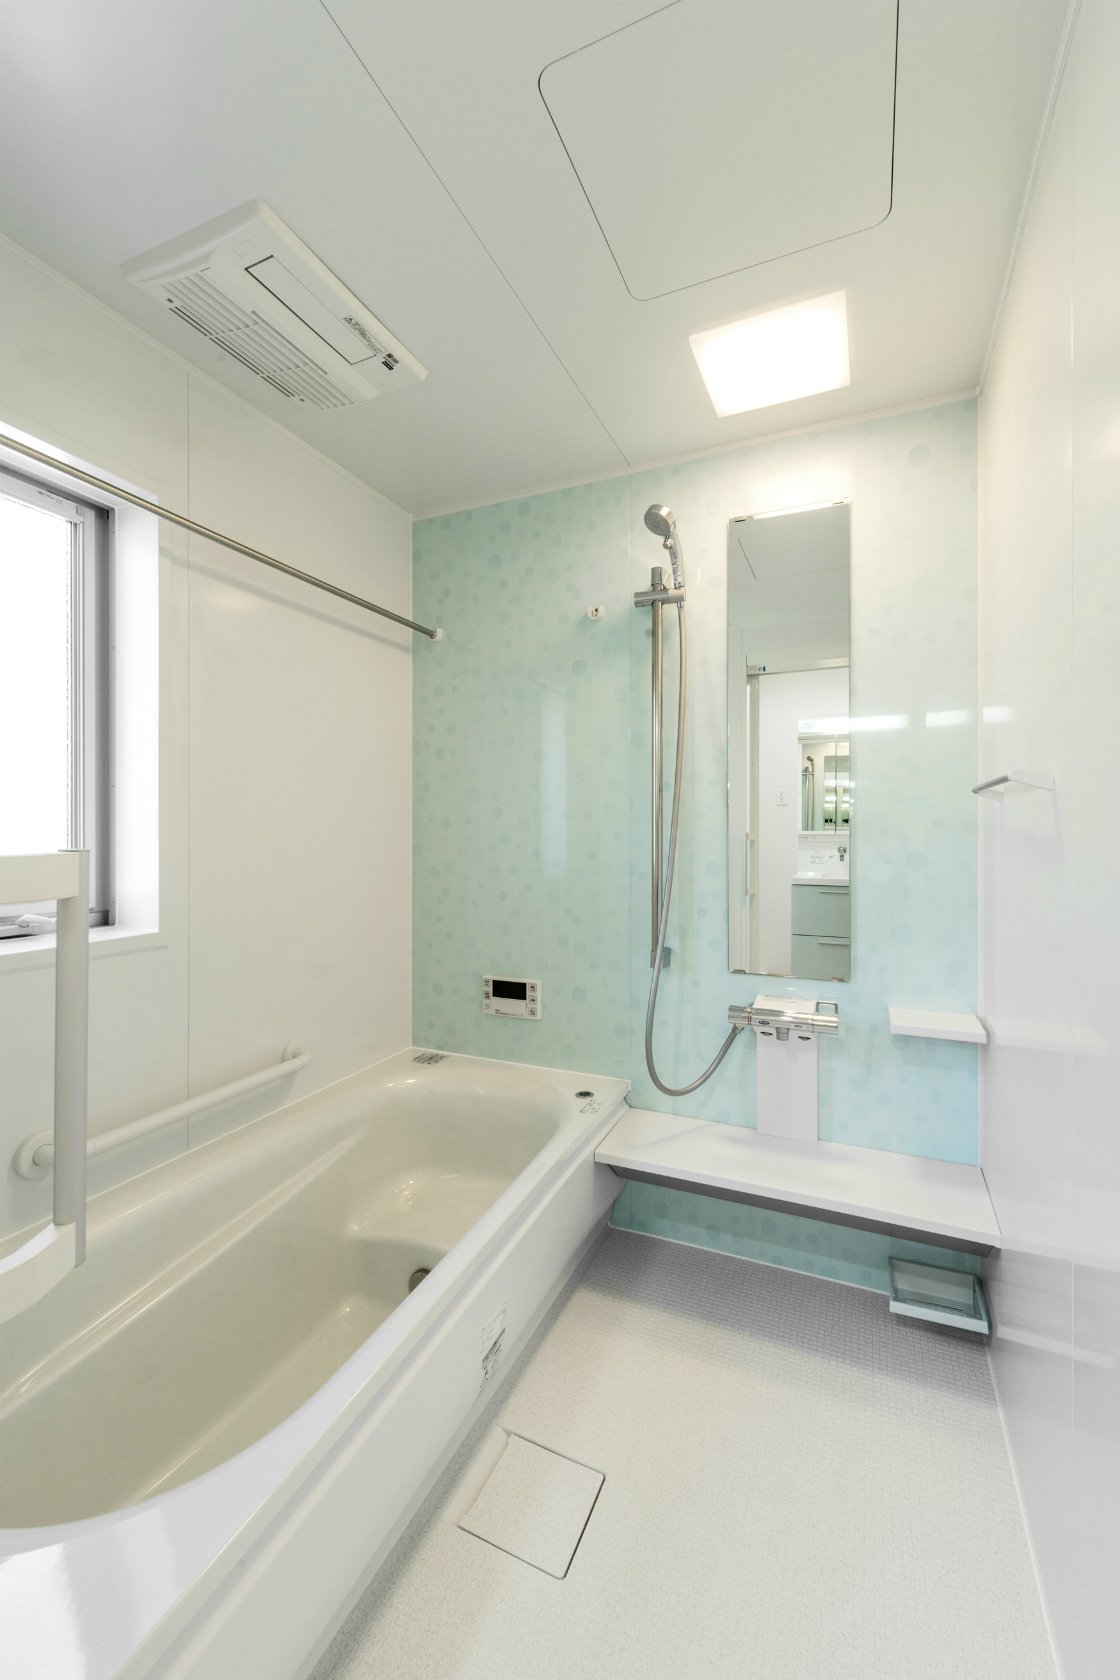 名古屋市中川区のおしゃれなデザインの注文住宅の柔らかな水色のゆったりとしたバスルーム